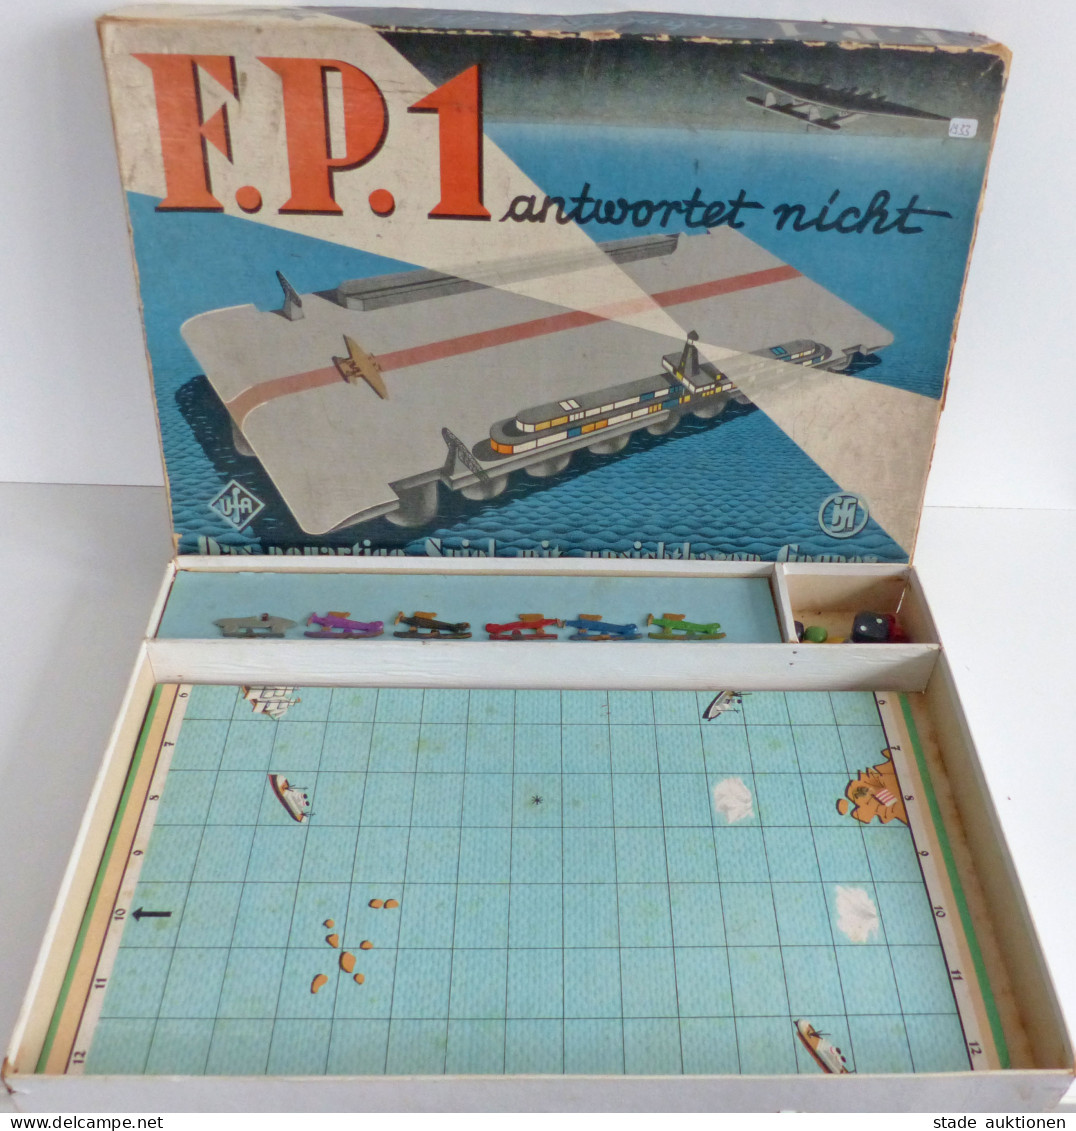 Spielzeug F.P.1 Antwortet Nicht Das Neuartige Spiel Mit Unsichtbaren Gegnern Von 1933, Originalverpackung 1 Flugzeug Feh - Games & Toys